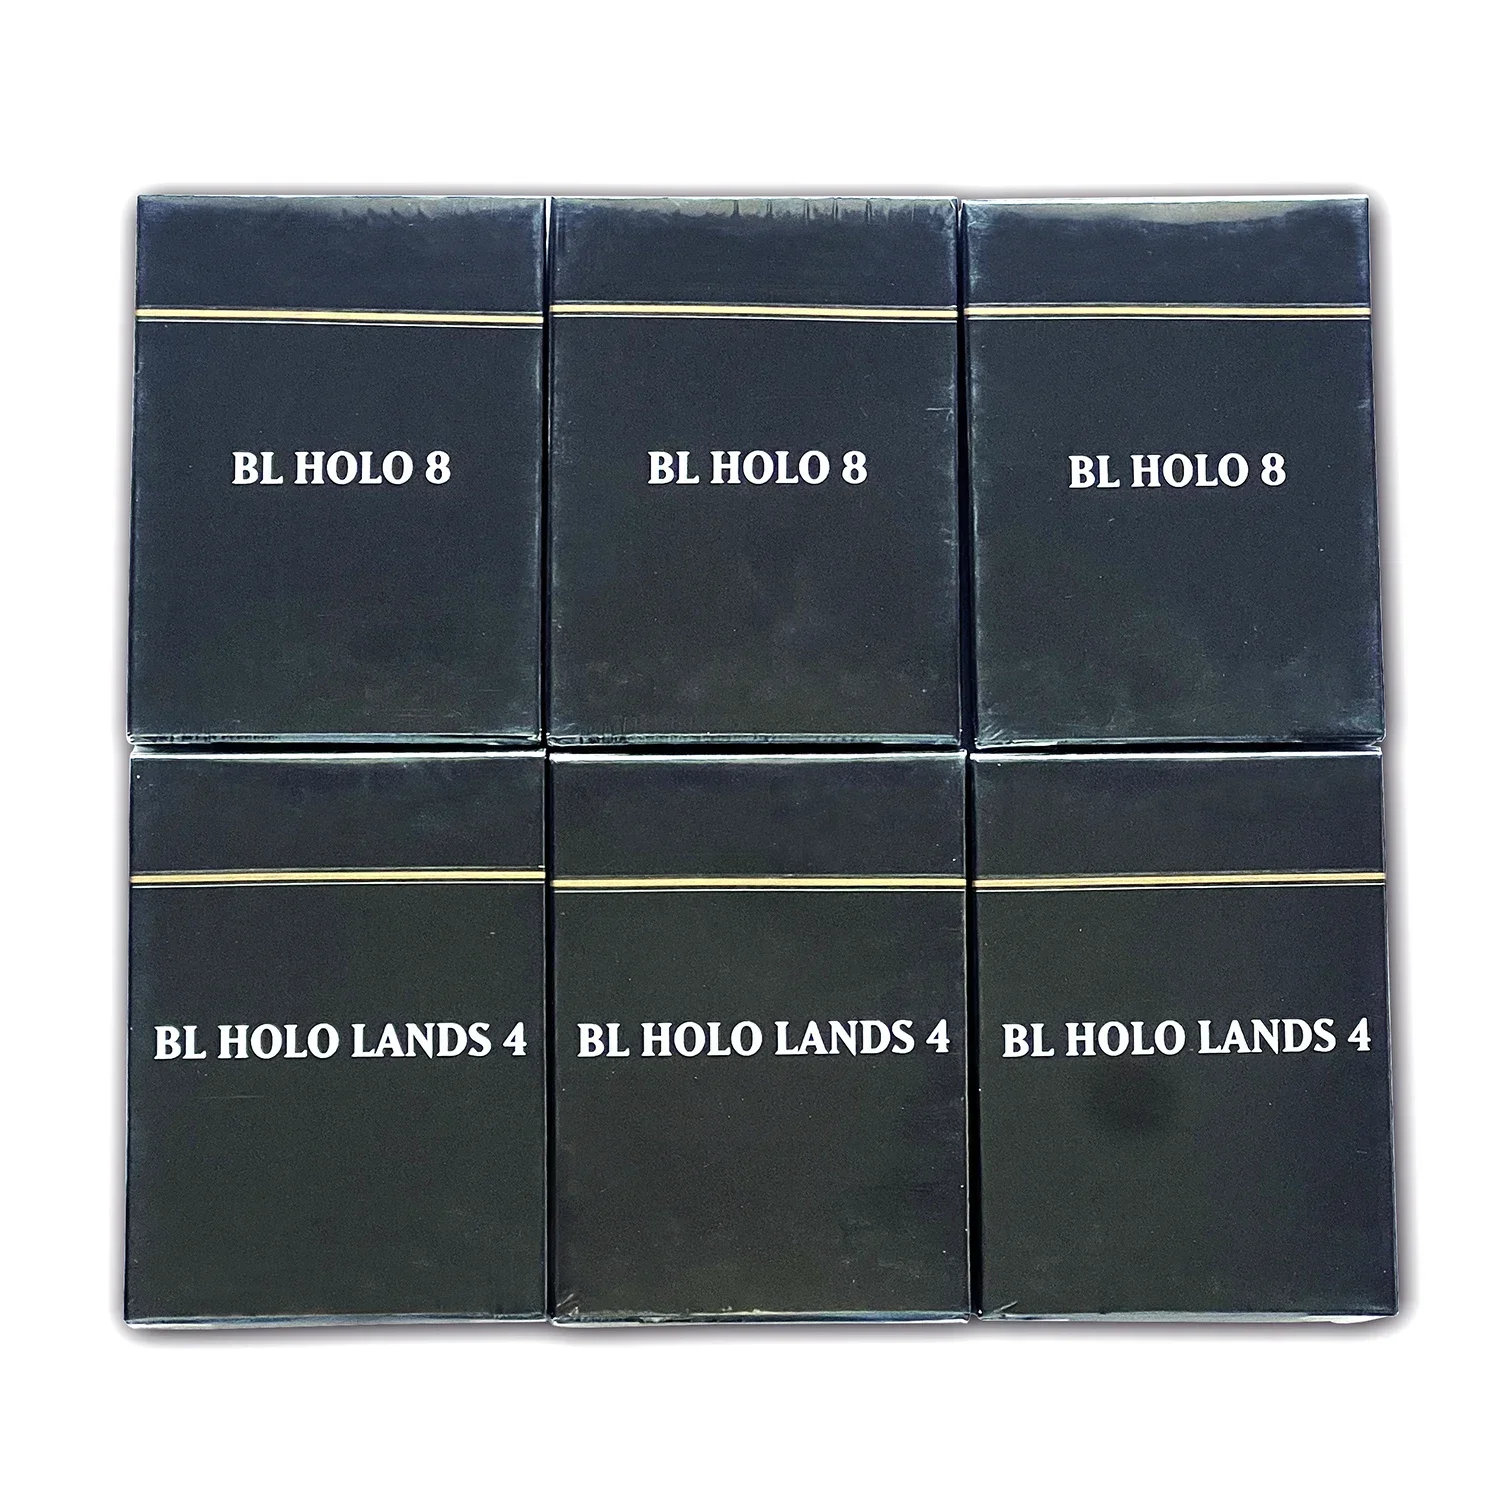 

Новейший HOLO/Обычный полный набор черных ядер прокси King игровые карты Premade SET BL высшее качество пользовательские игральные карты, настольные игры в покер